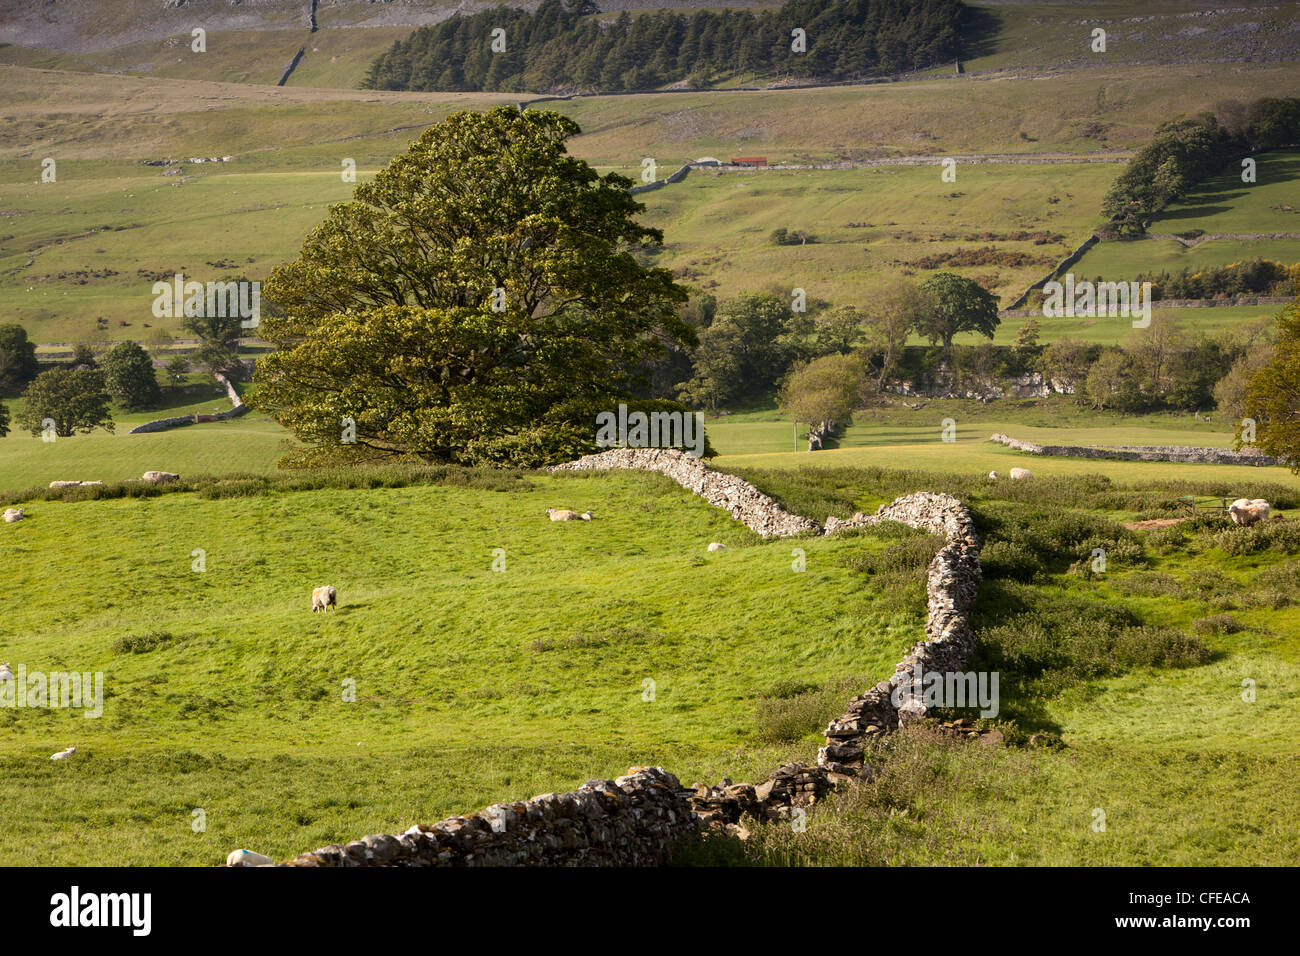 Regno Unito, Inghilterra, Yorkshire, Wensleydale, agricoltura, pecore pascolano sui lussureggianti terreni agricoli dales divisa da muri in pietra a secco Foto Stock